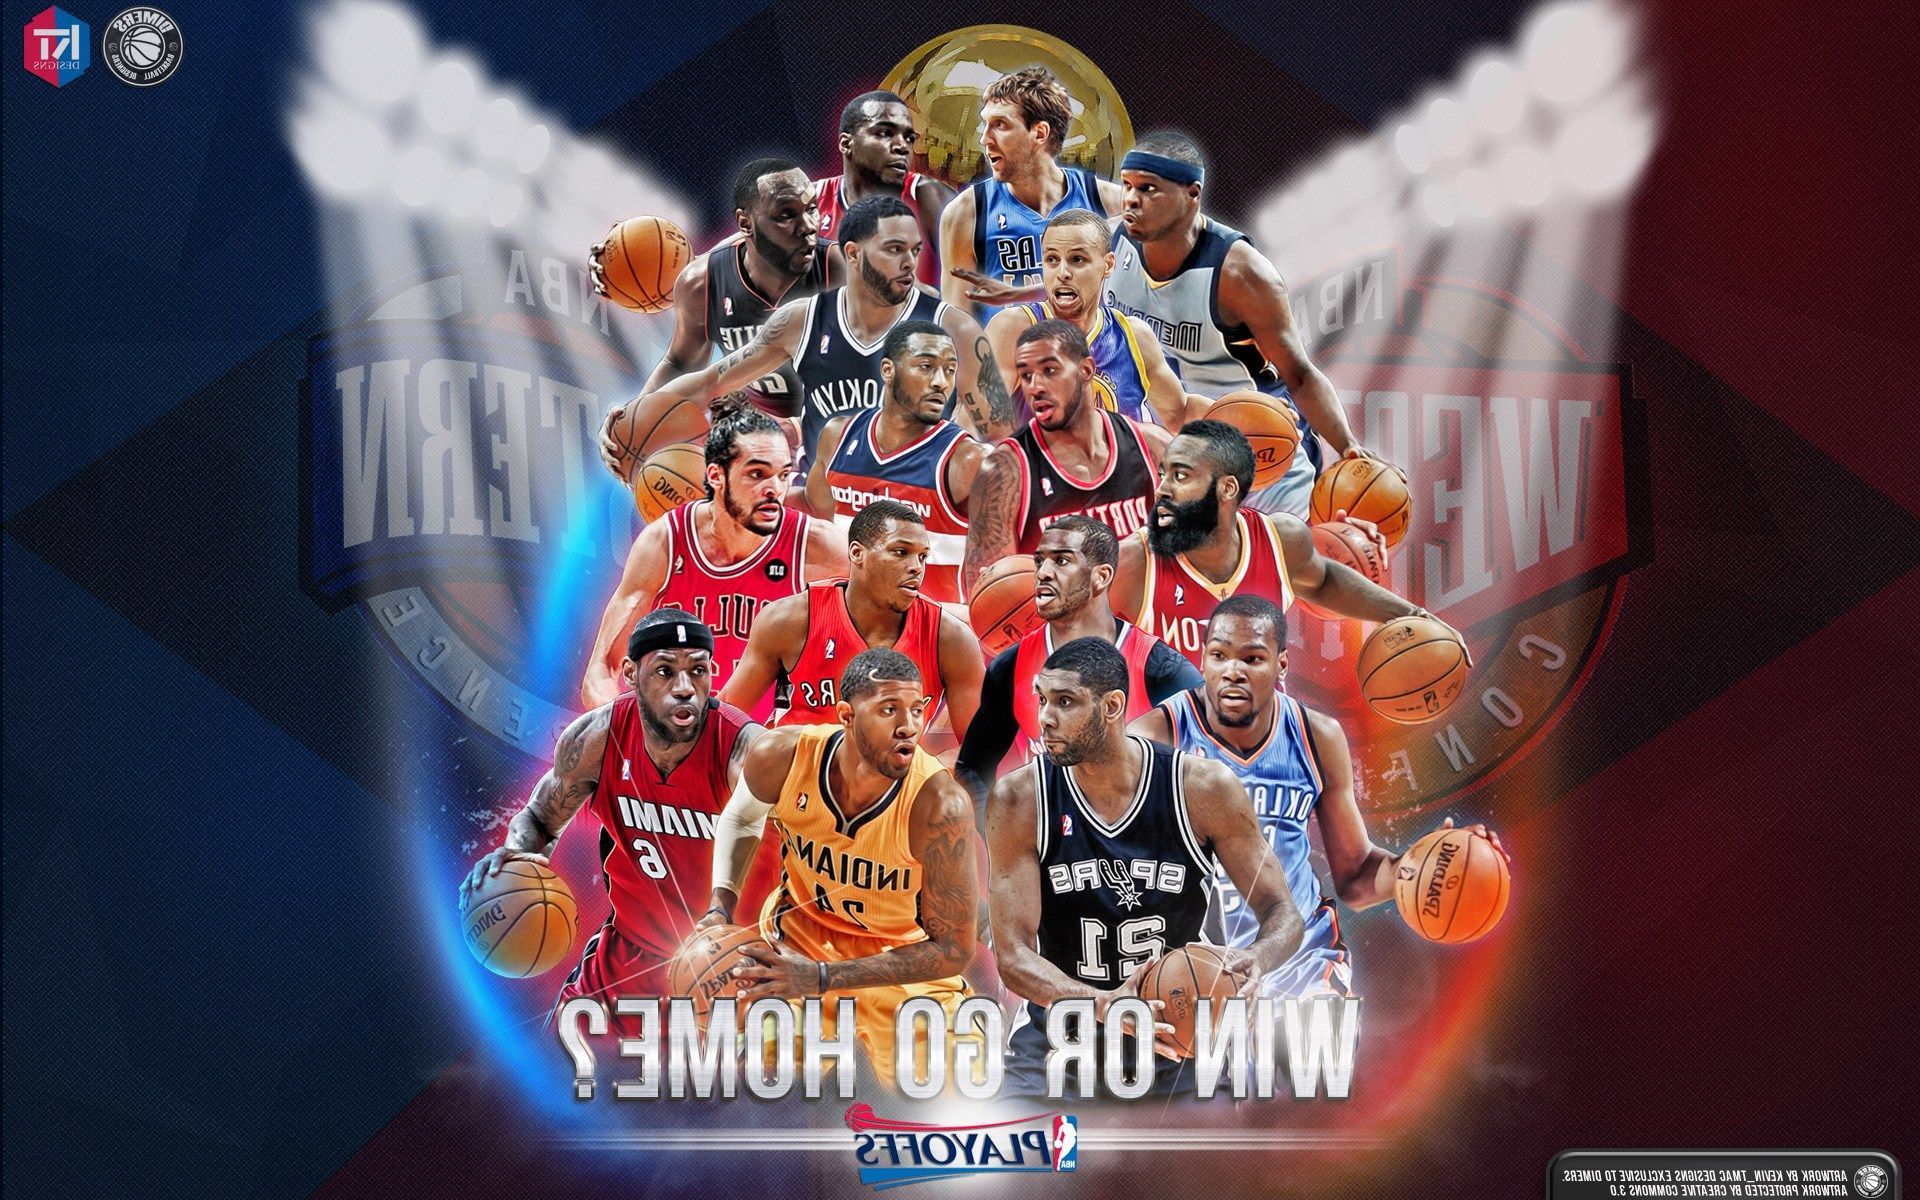 NBA Legends Wallpaper Free NBA Legends Background